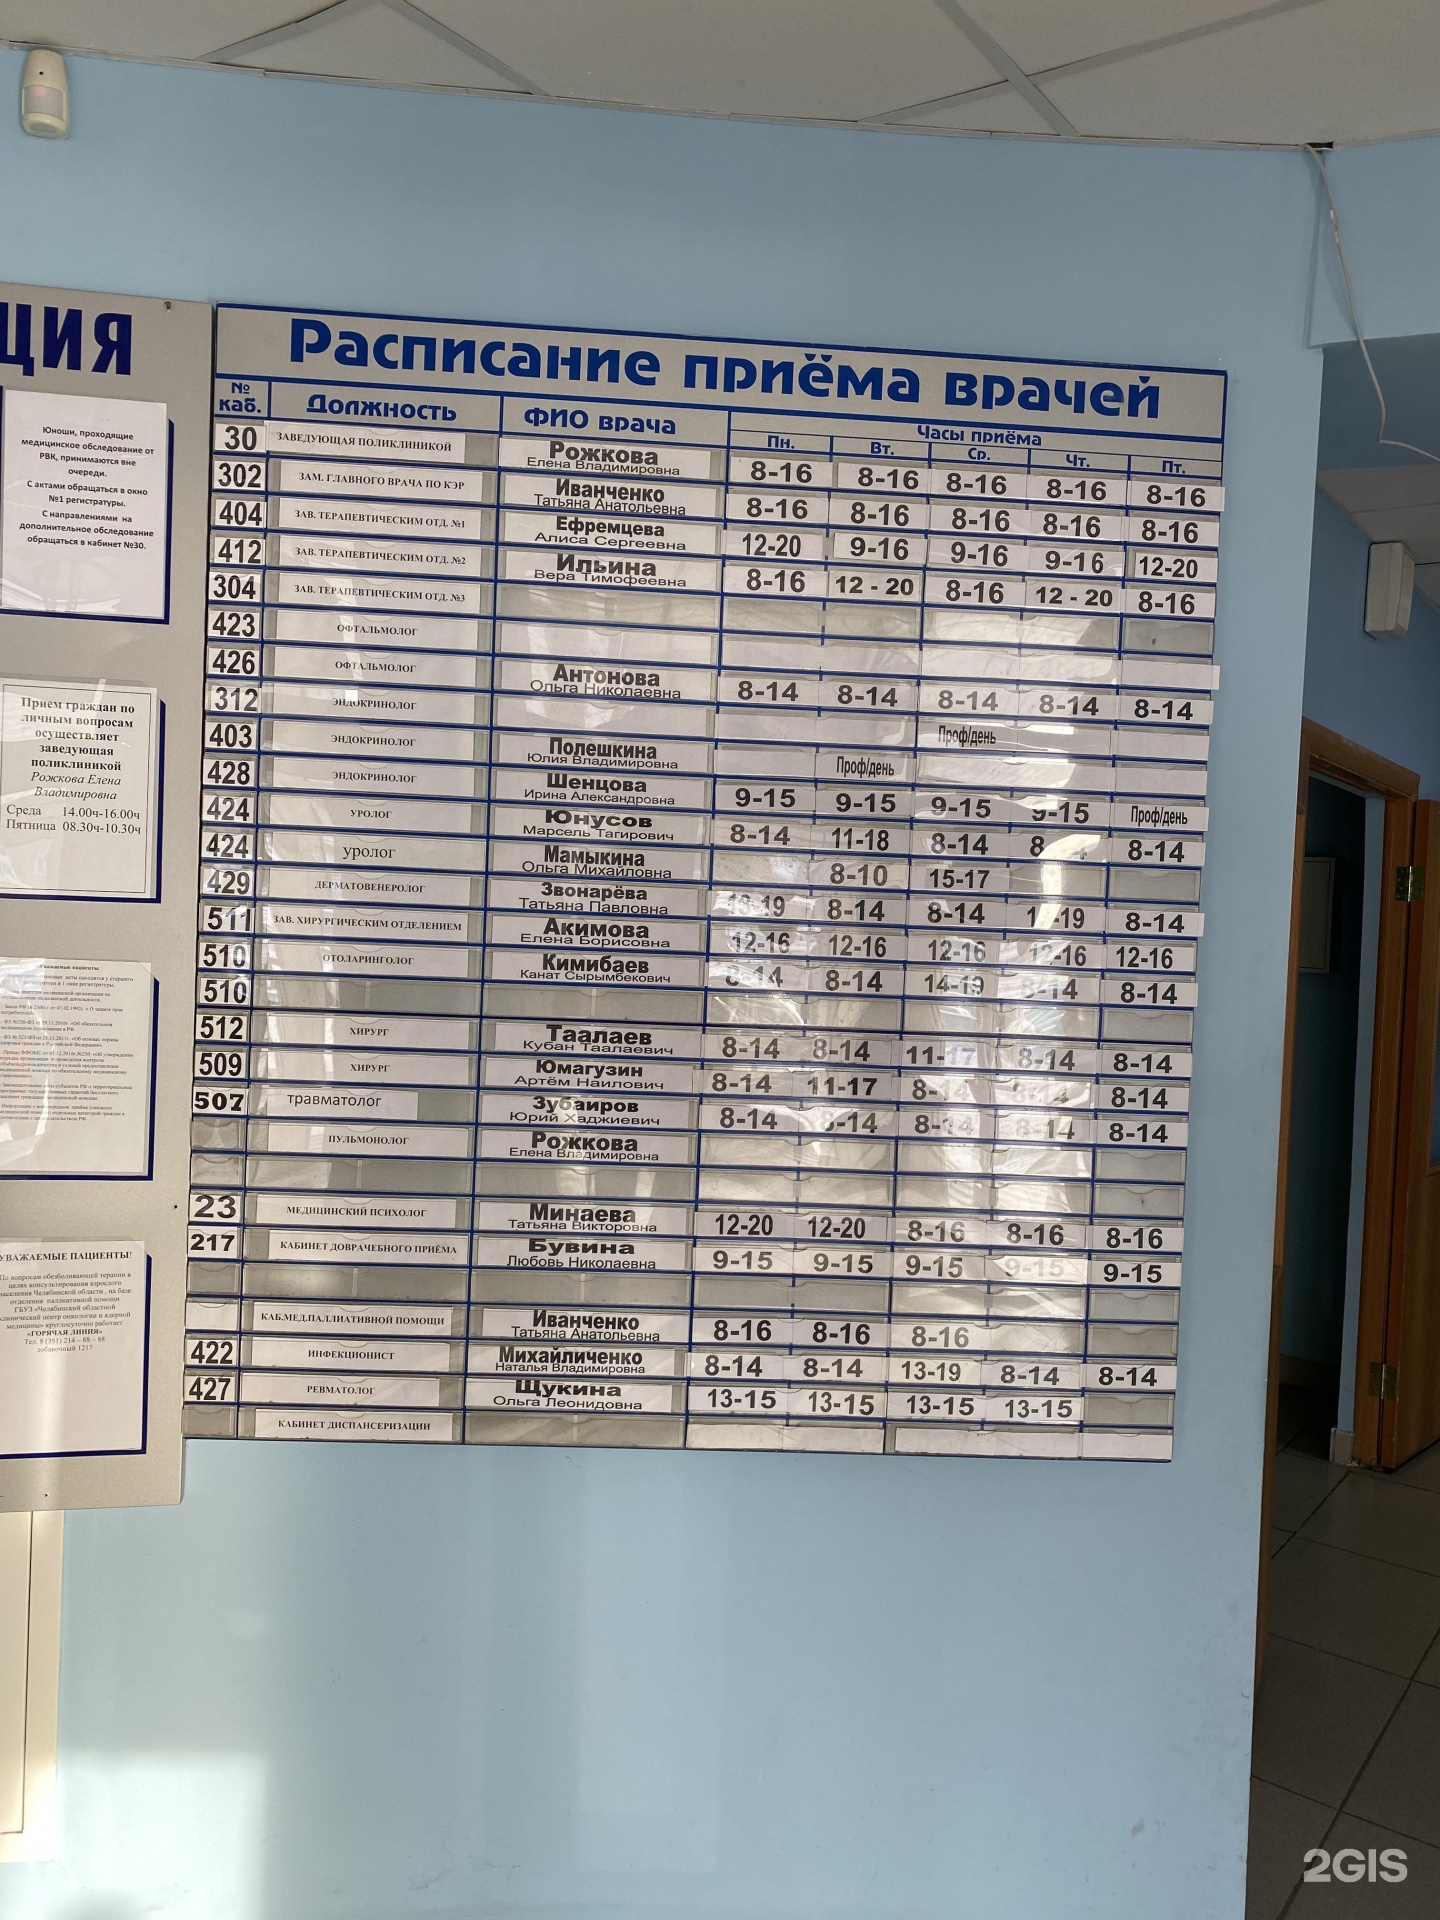 Расписание врачей на советской